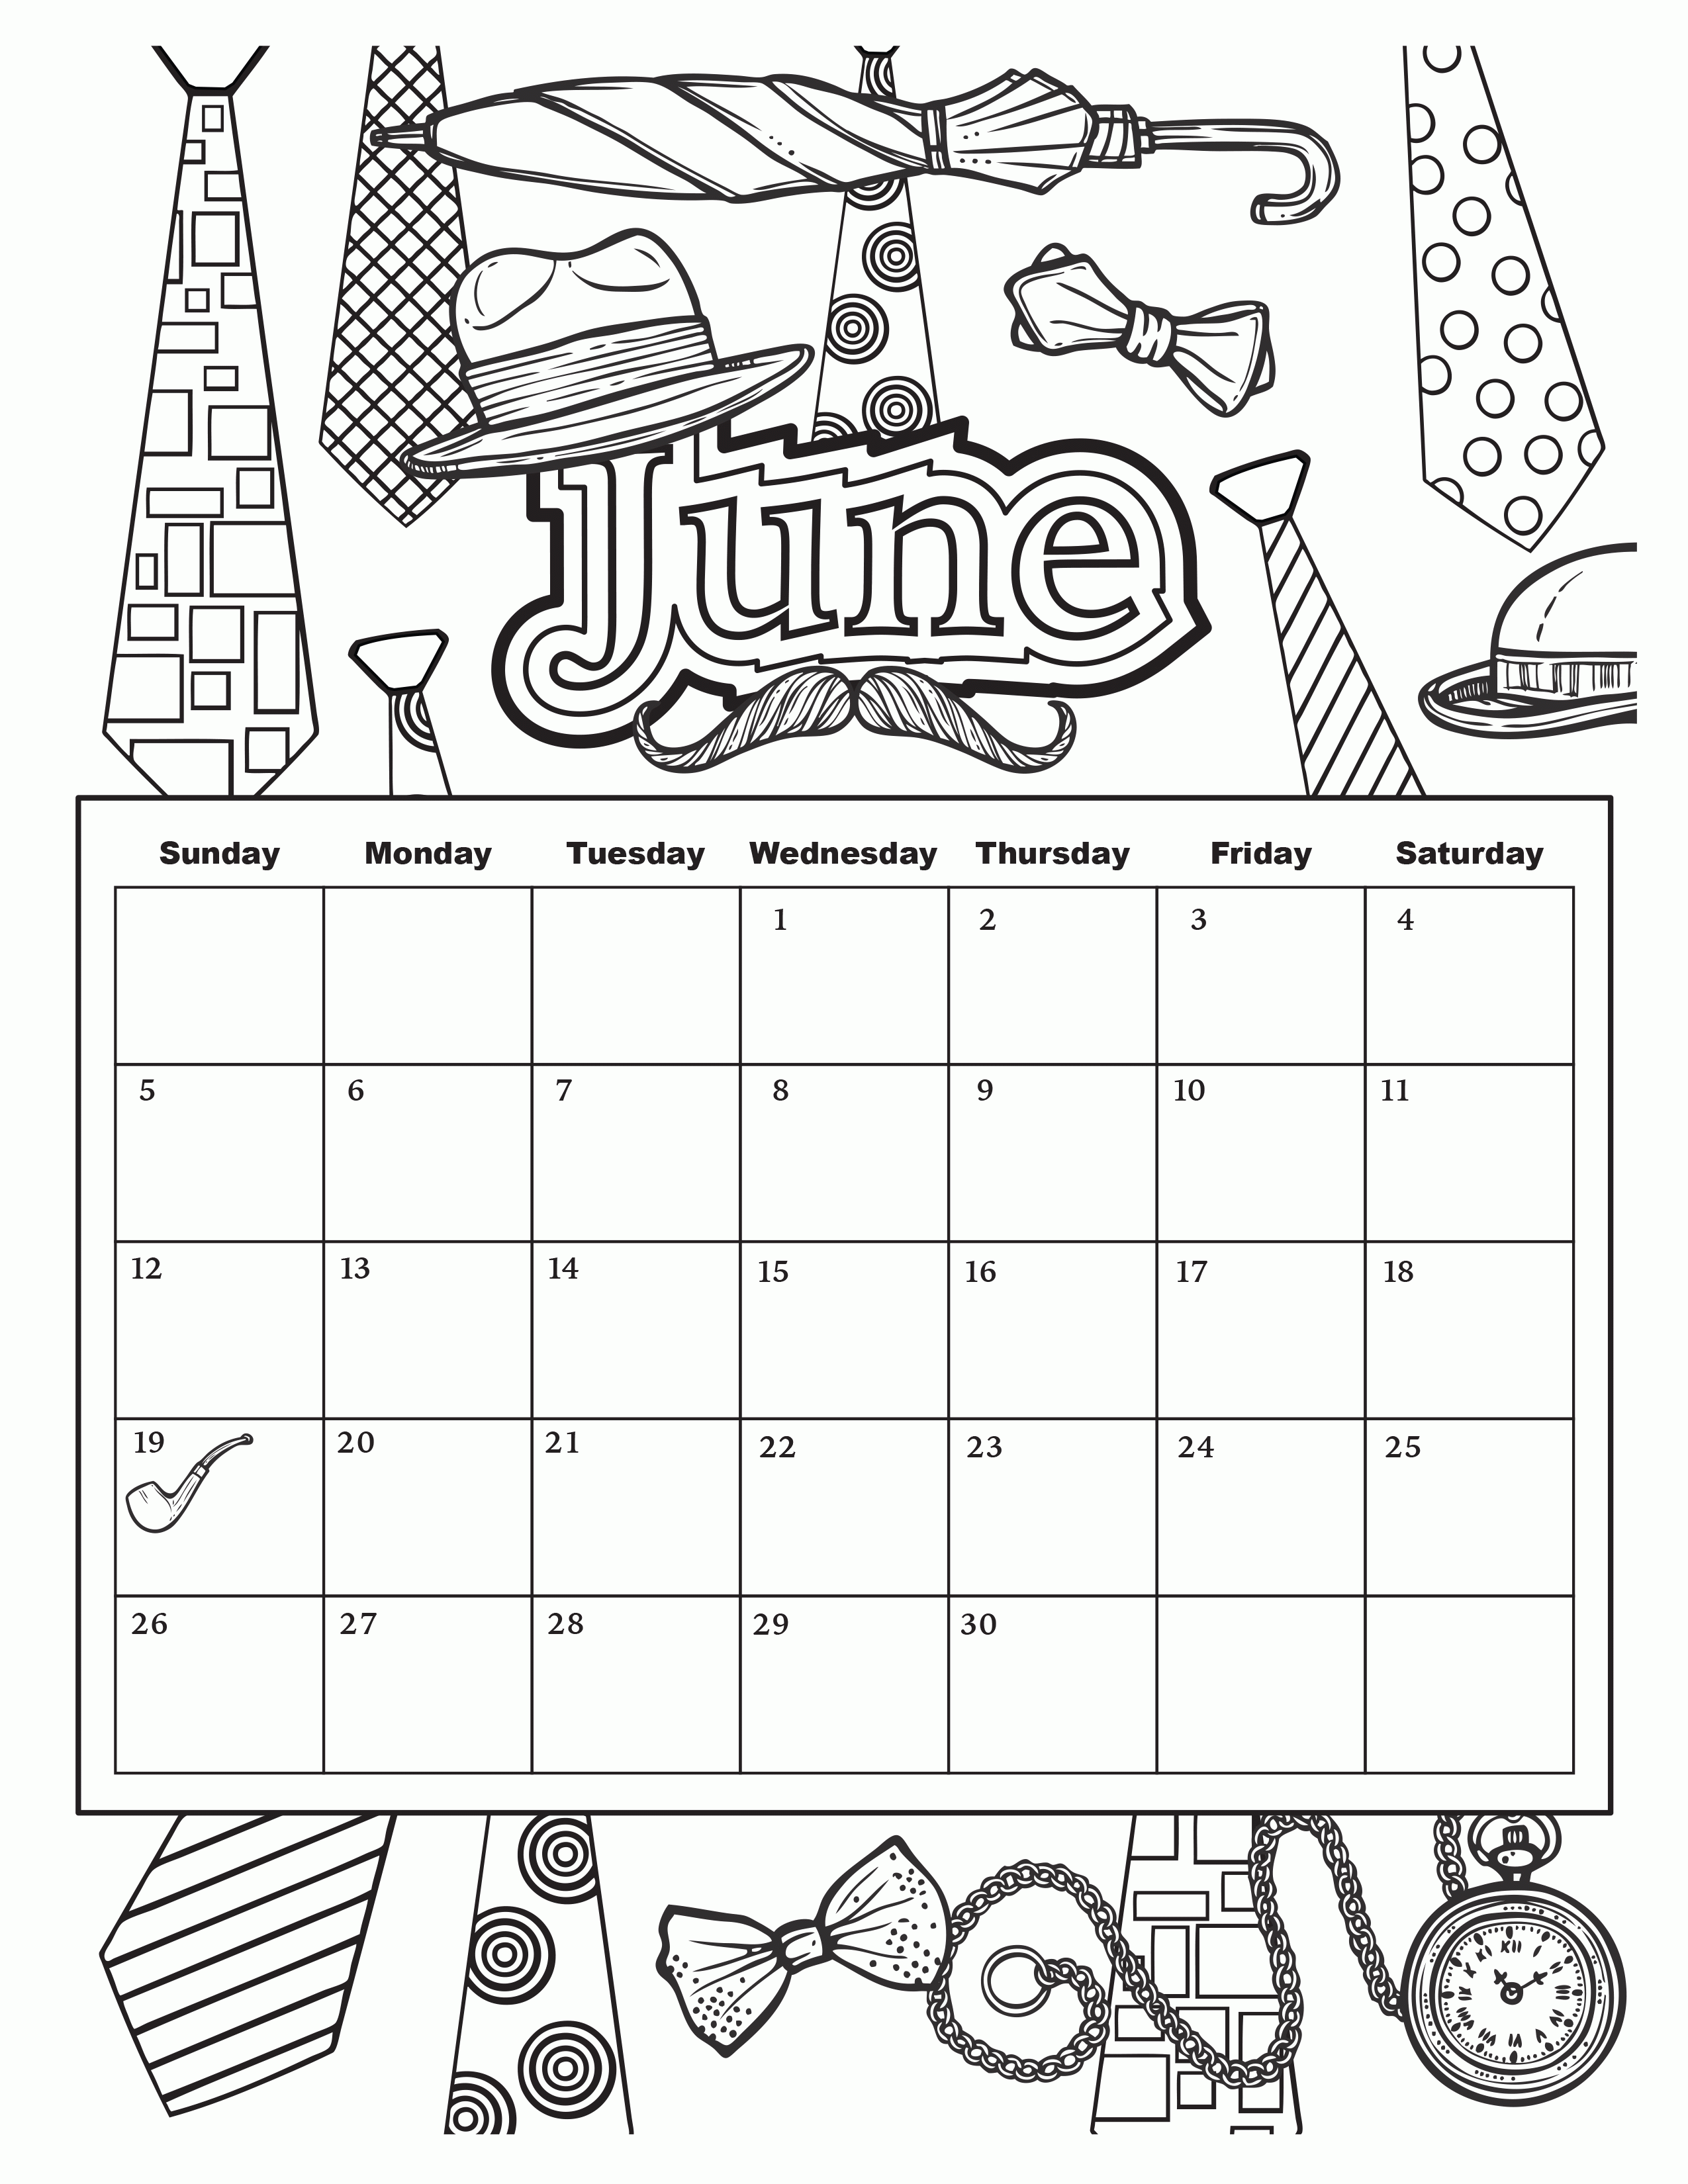 June printable coloring calendar